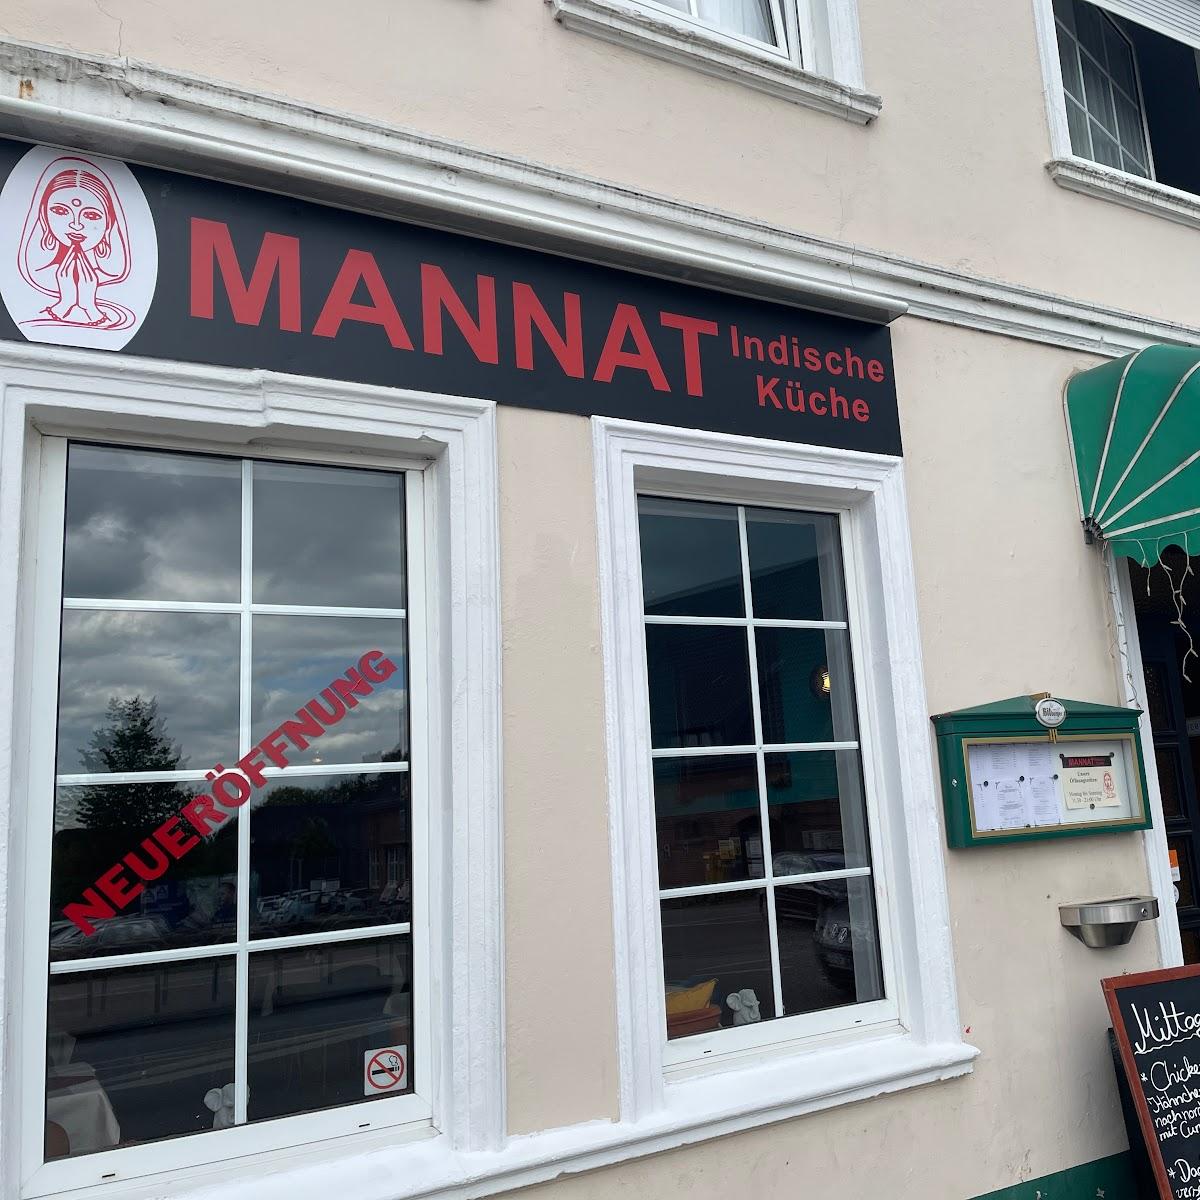 Restaurant "Mannat Indische Küche" in Hamburg